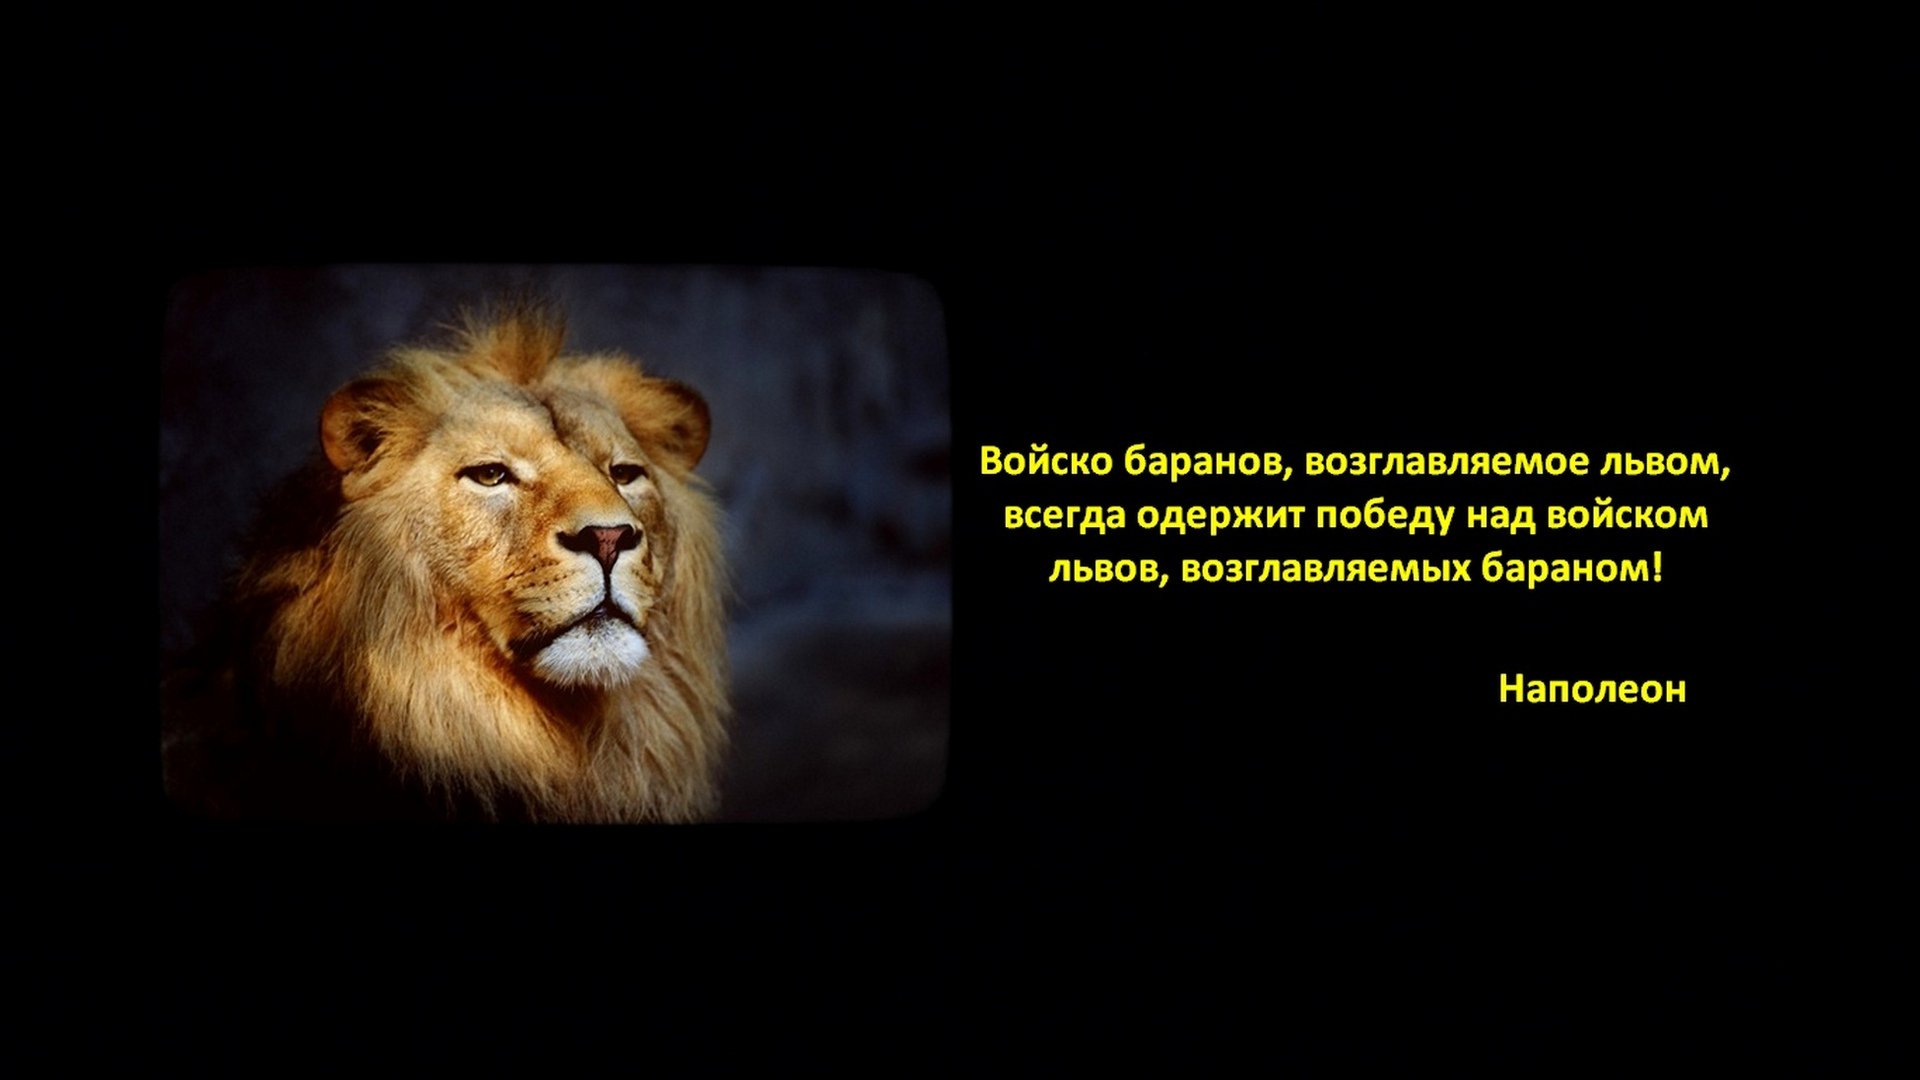 Войско Баранов возглавляемое львом всегда одержит победу